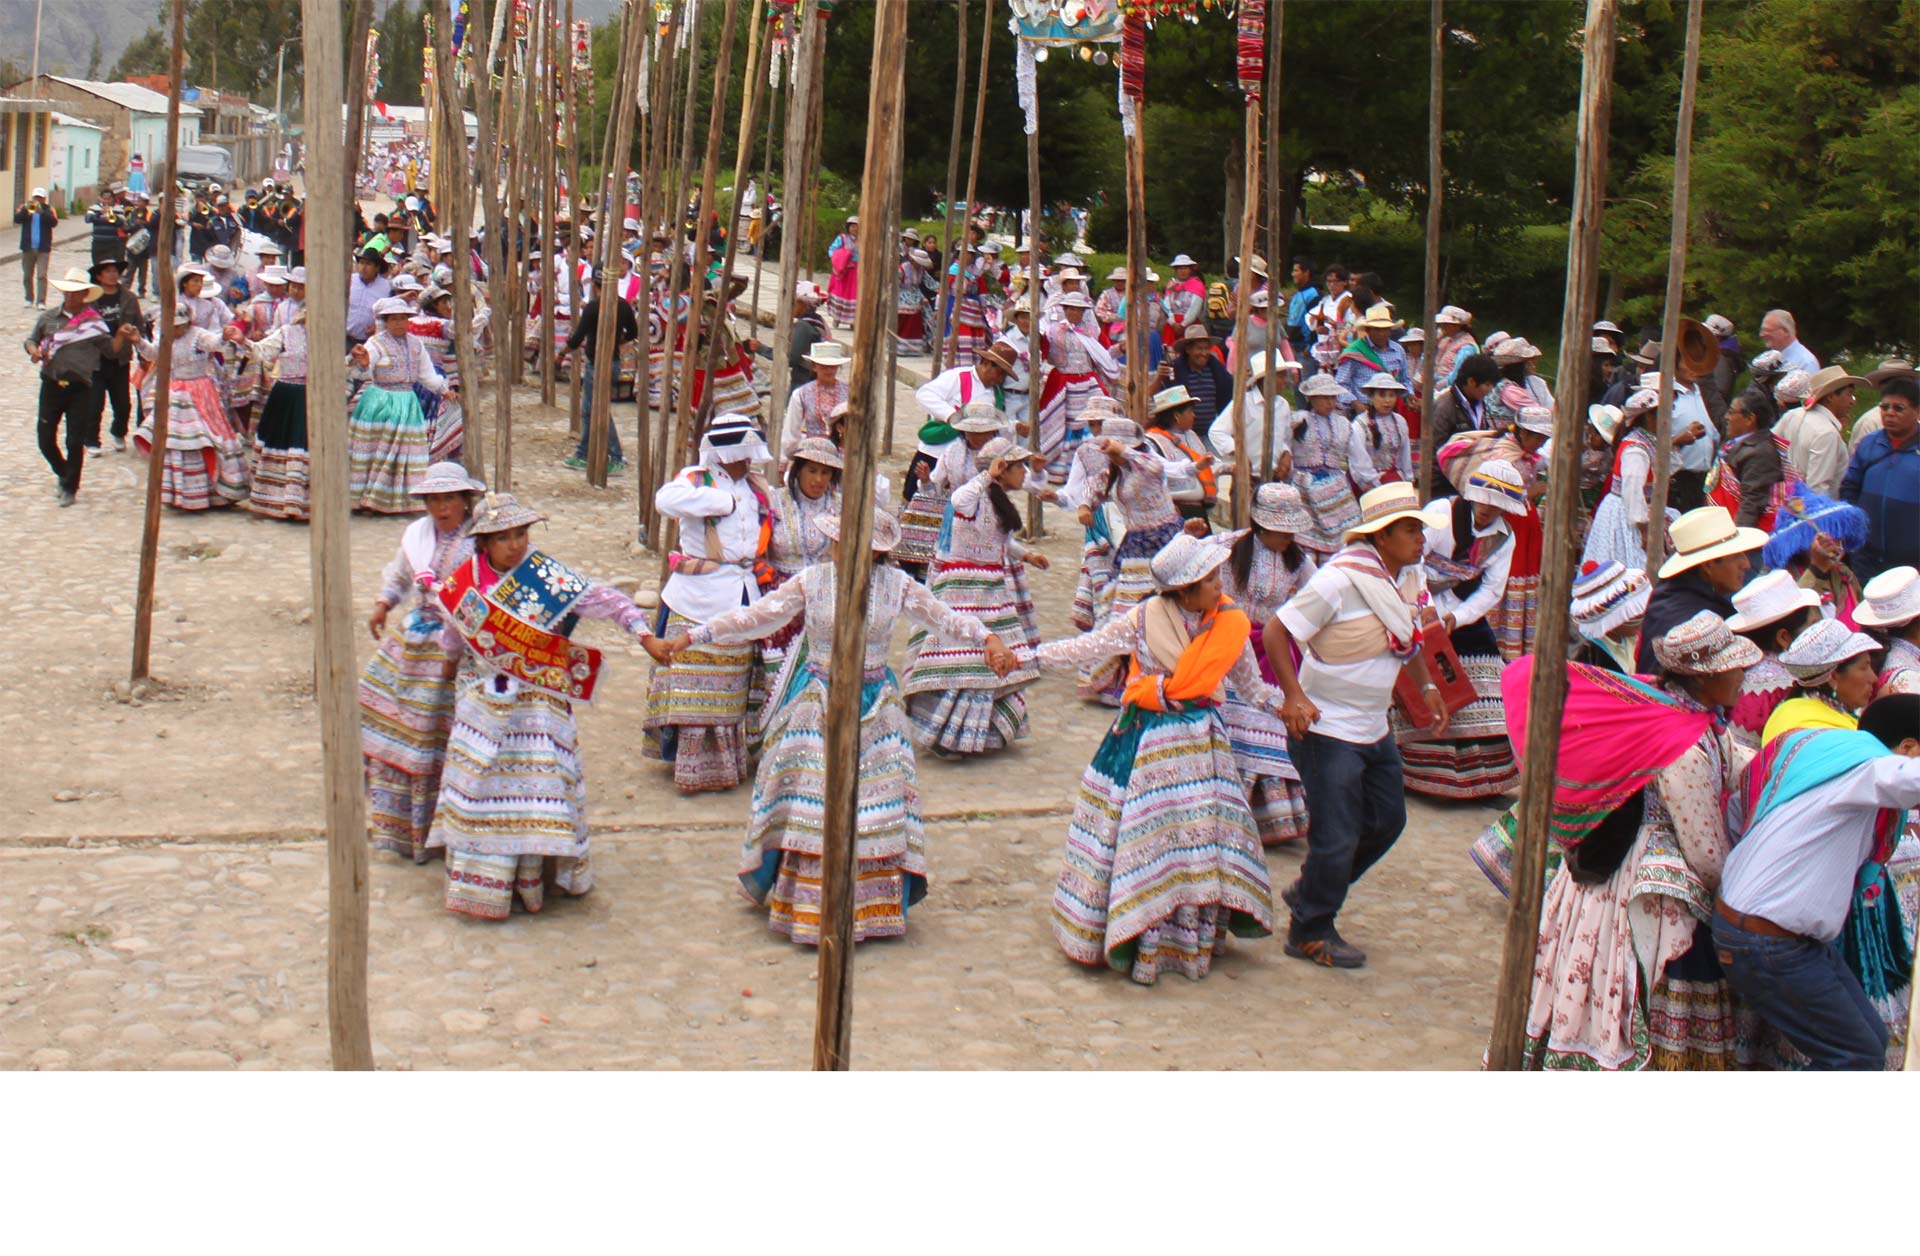 Se trata de un baile popular tradicional peruano, que guarda relación con el comienzo de la edad adulta